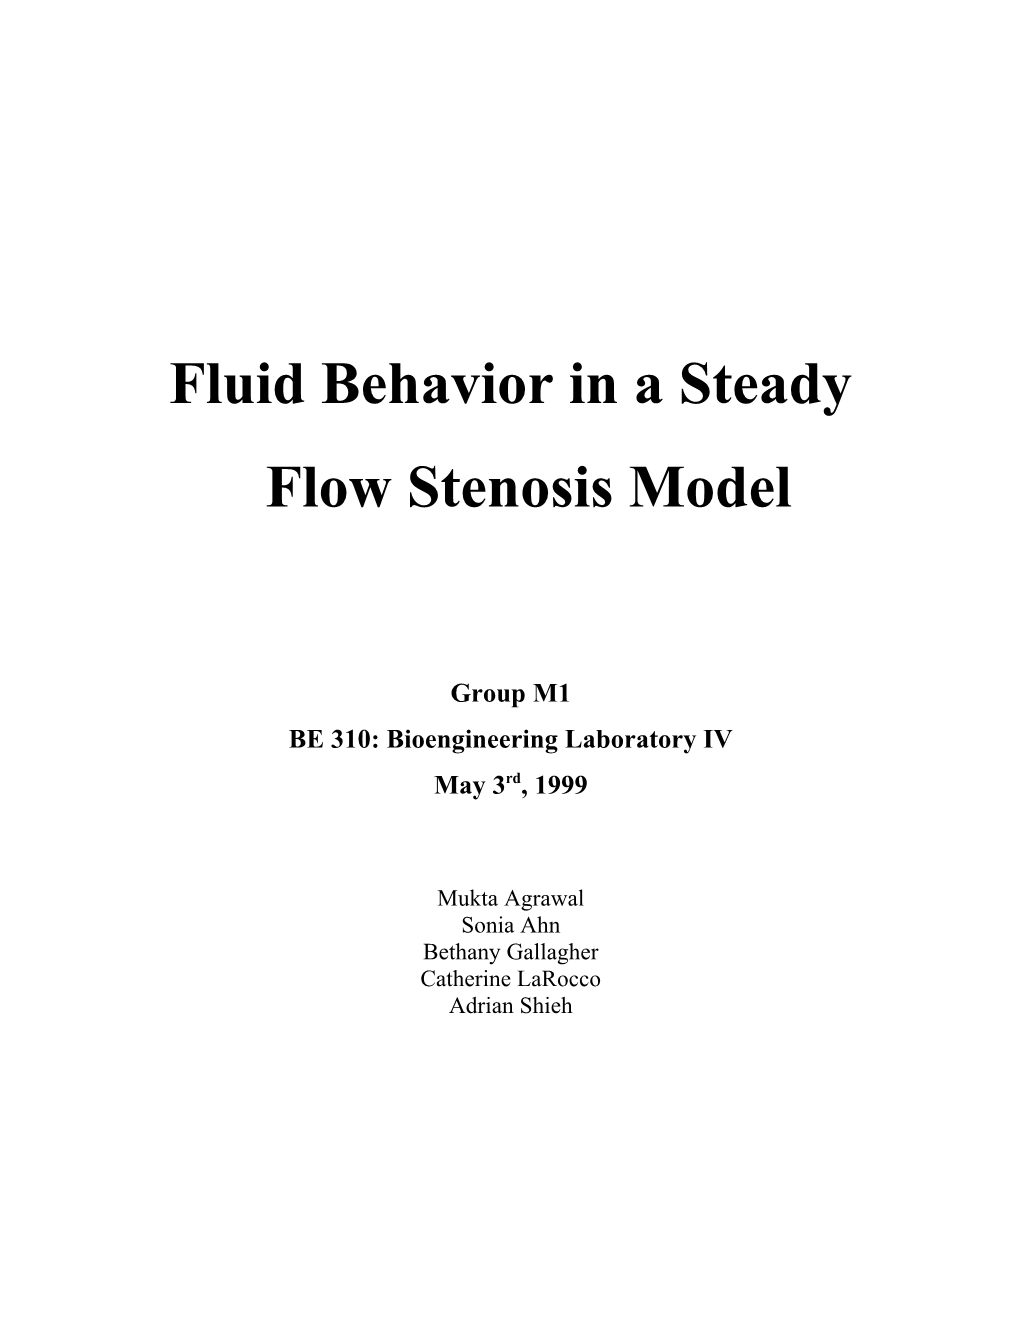 Fluid Behavior in a Steady Flow Stenosis Model